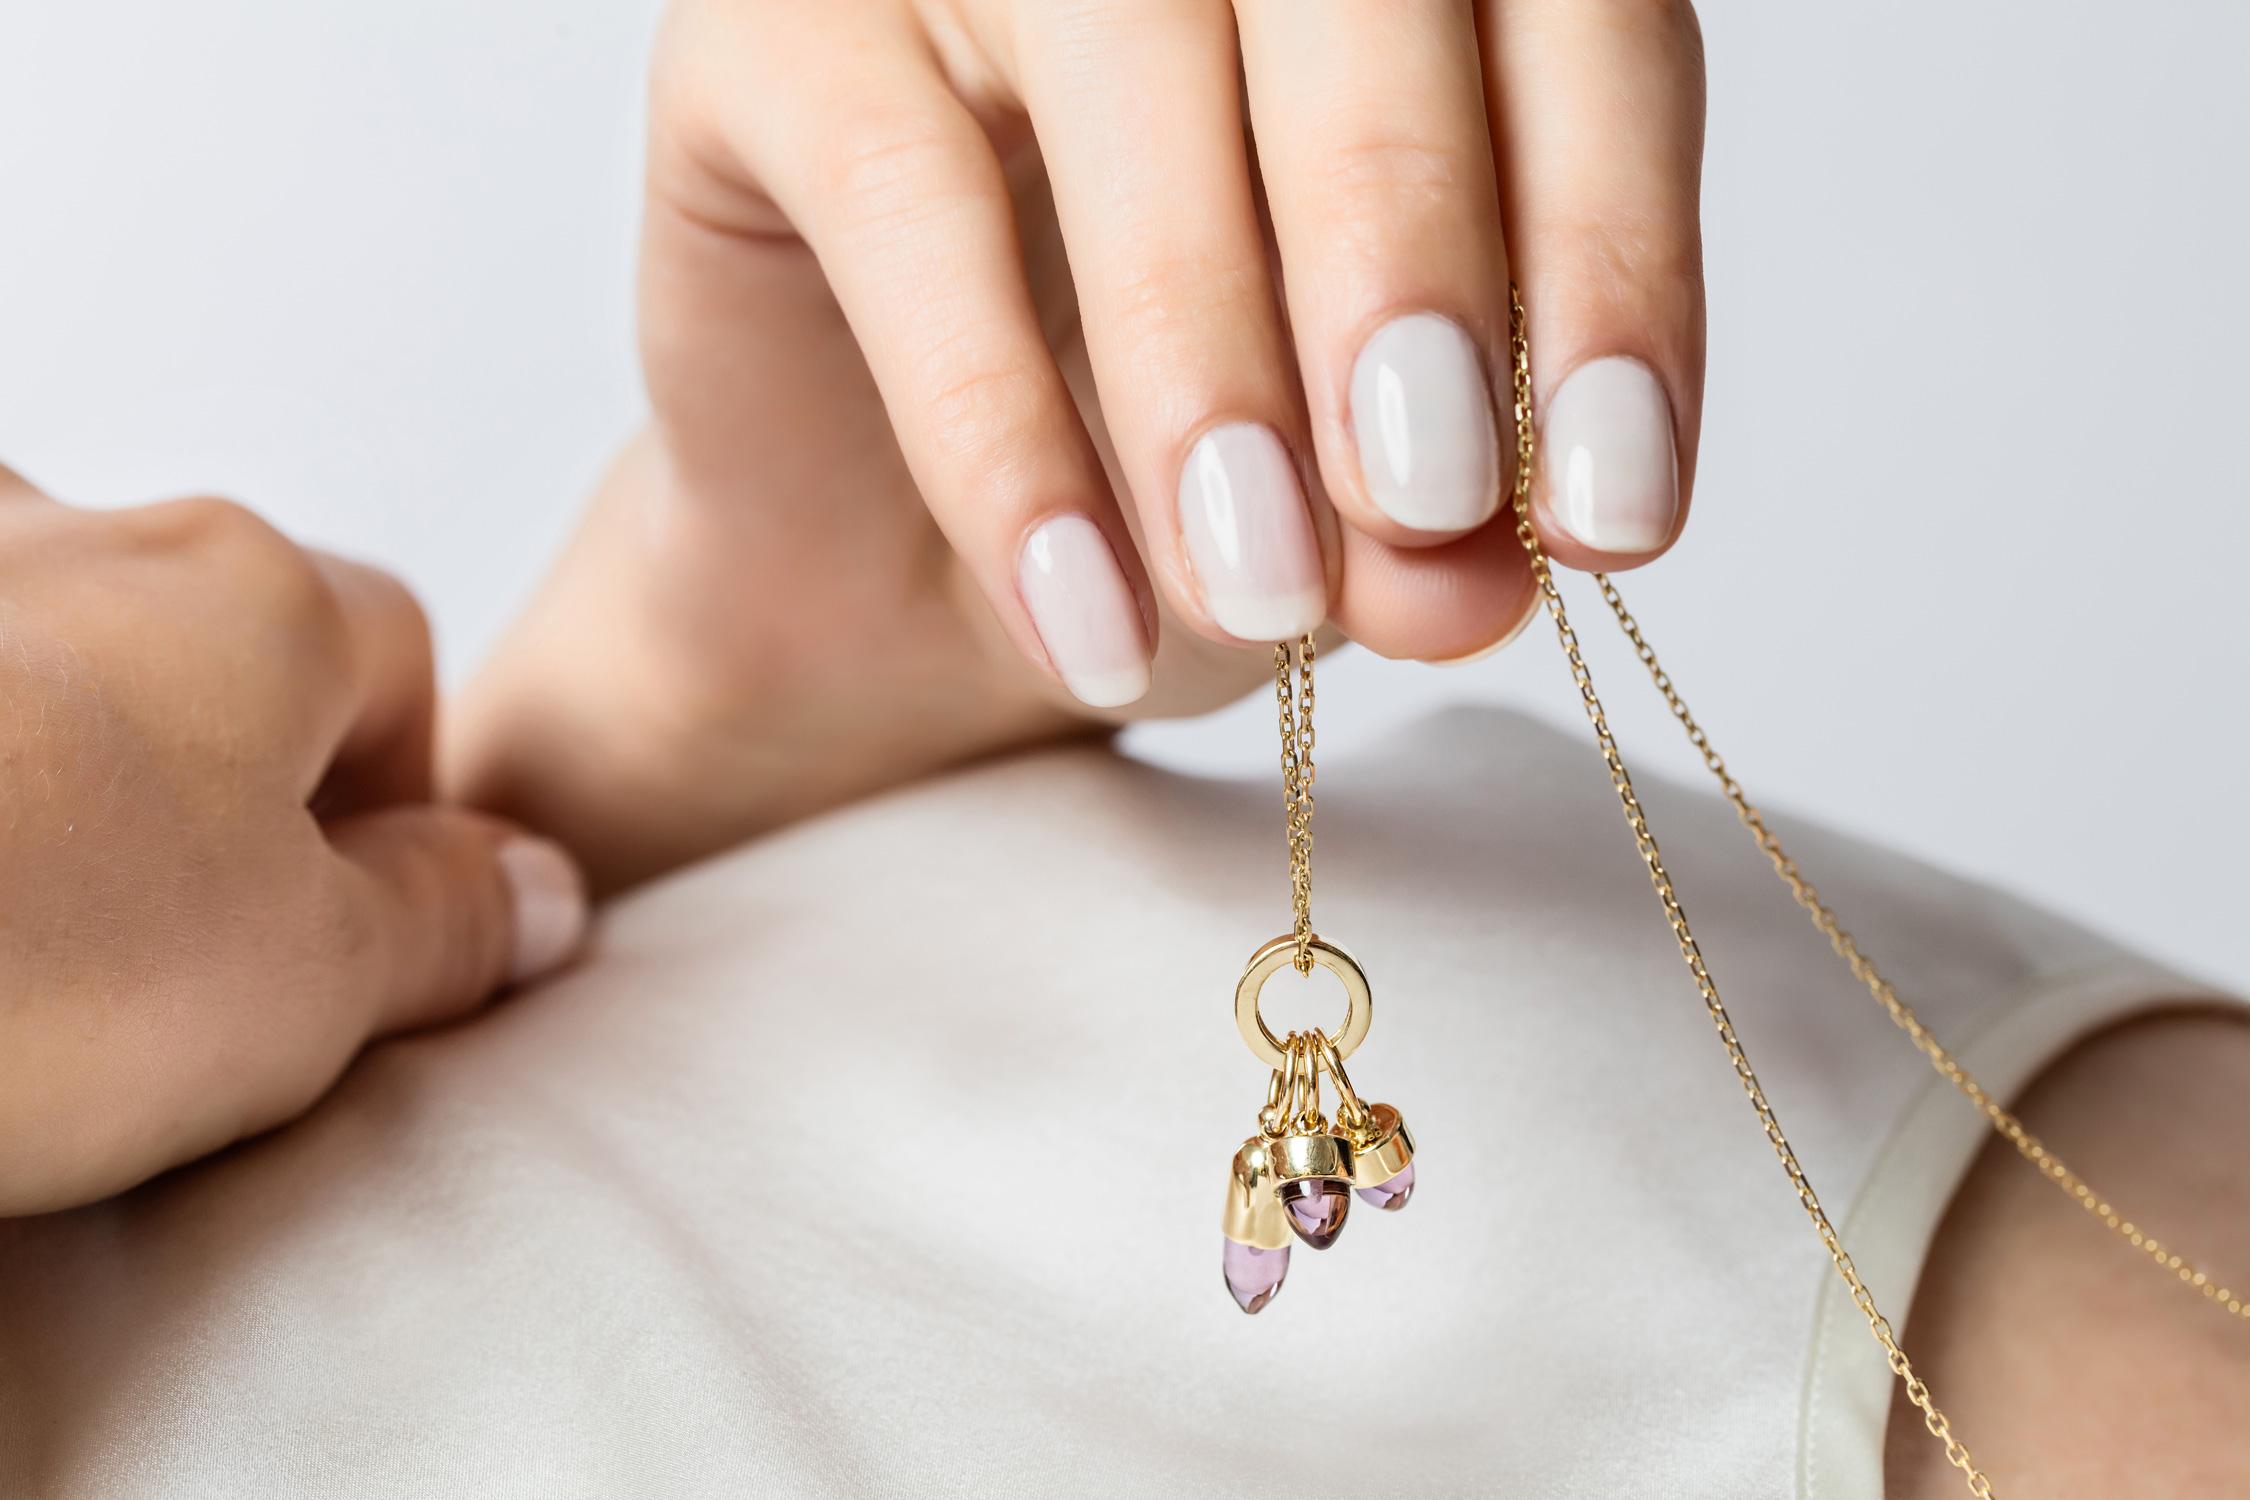 MAVIADA's Skopelos Charms Halskette aus 
18k Gelbgold Charms, 3 Steine - lila Amethyst Quarz einfarbig Halskette.
Sie sind sowohl mehrfarbig als auch einfarbig erhältlich, ganz wie Sie wollen....
Unsere schönen 18k Gelbgold Charme kommen mit einer